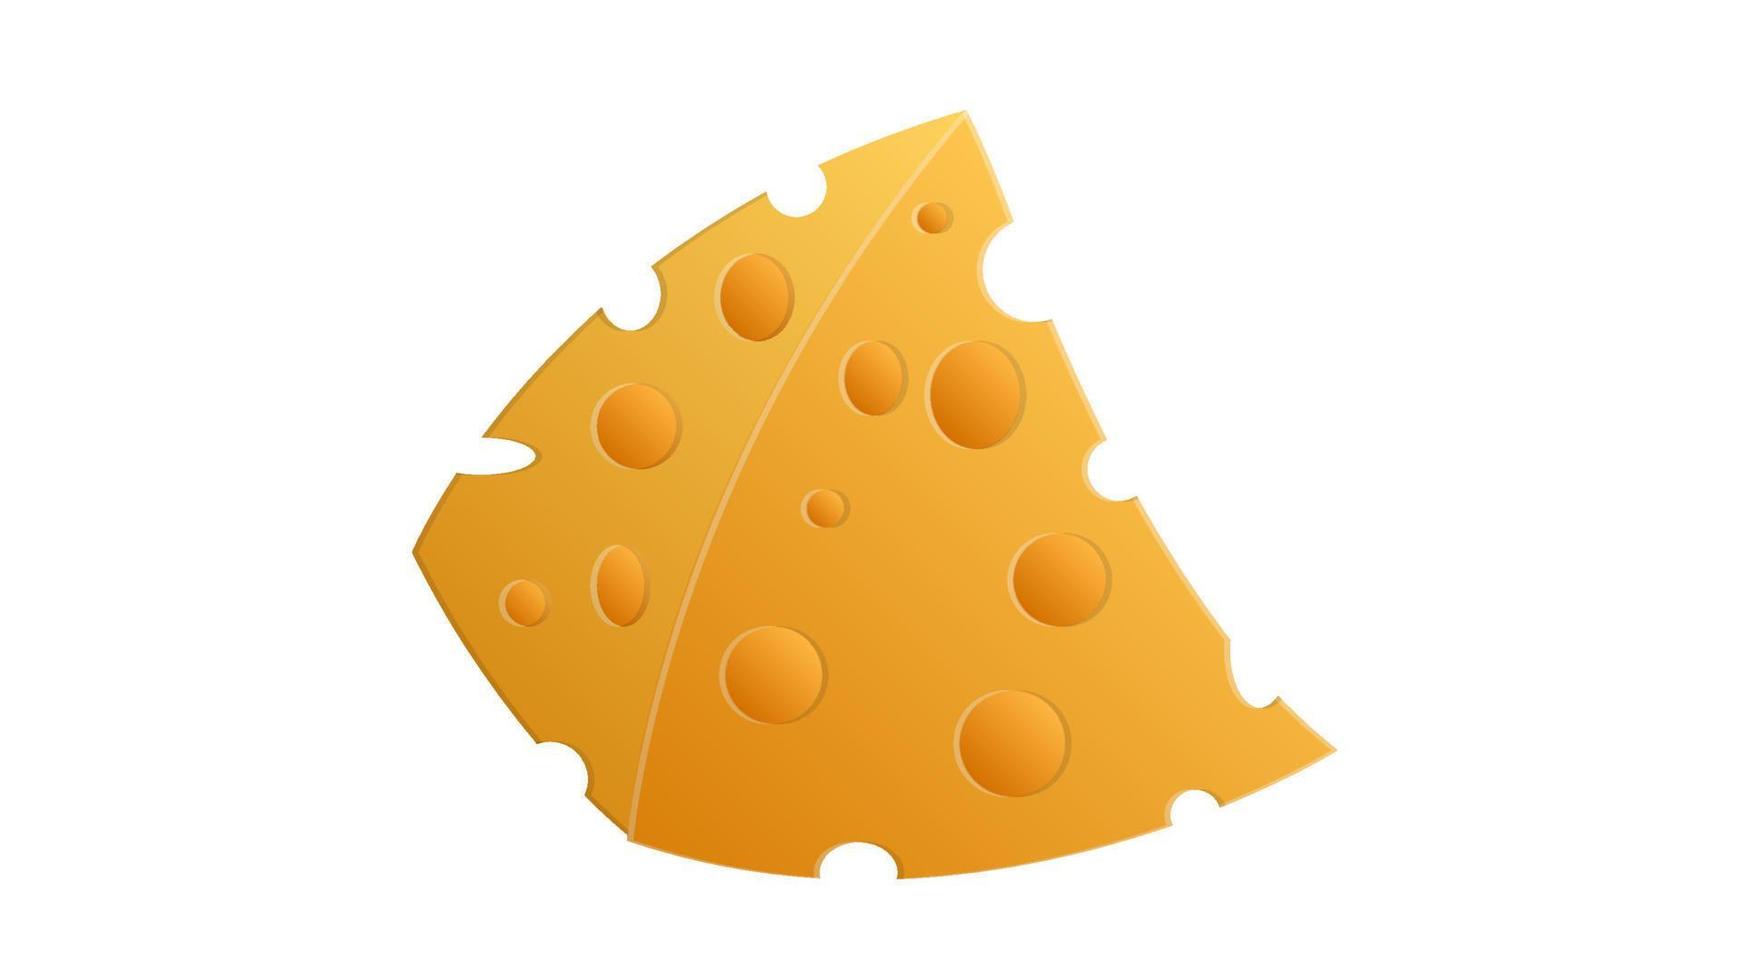 queso sobre un fondo blanco, ilustración vectorial. una apetitosa loncha triangular de queso con agujeros. productos agrícolas. queso cremoso natural y aromático vector